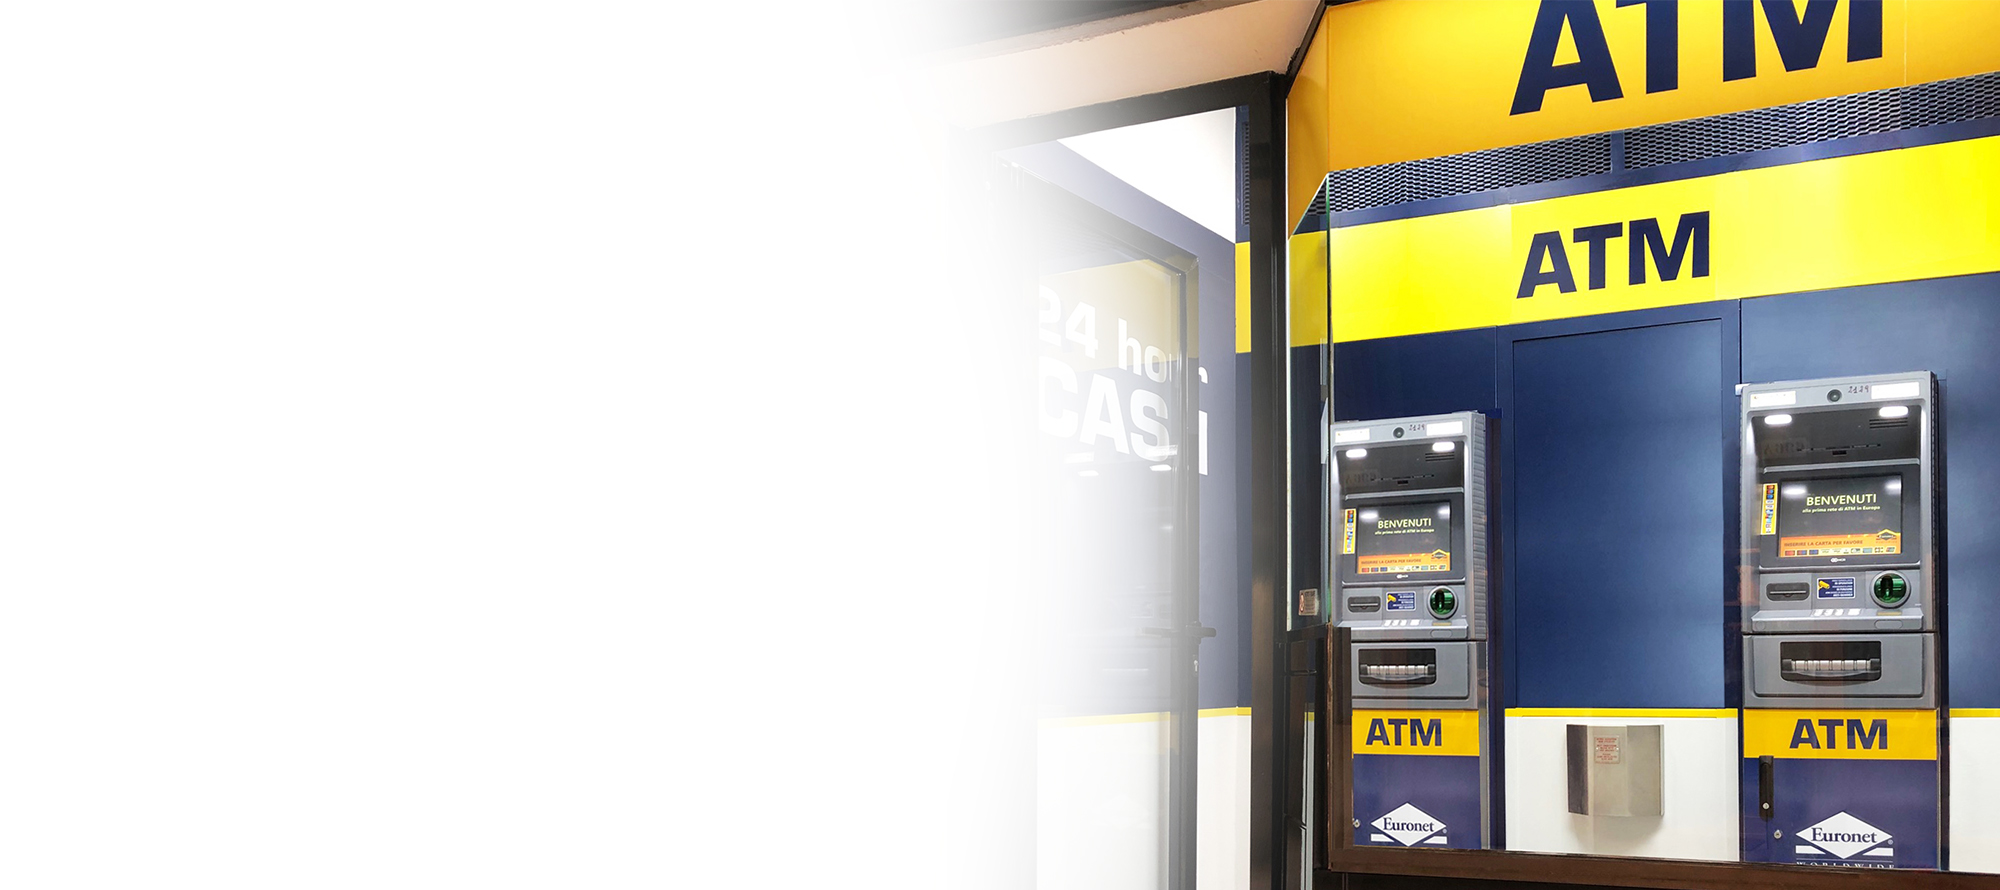 Un ATM Euronet può apportare benefici alla tua attività e fornire ai clienti un comodo accesso ai contanti.